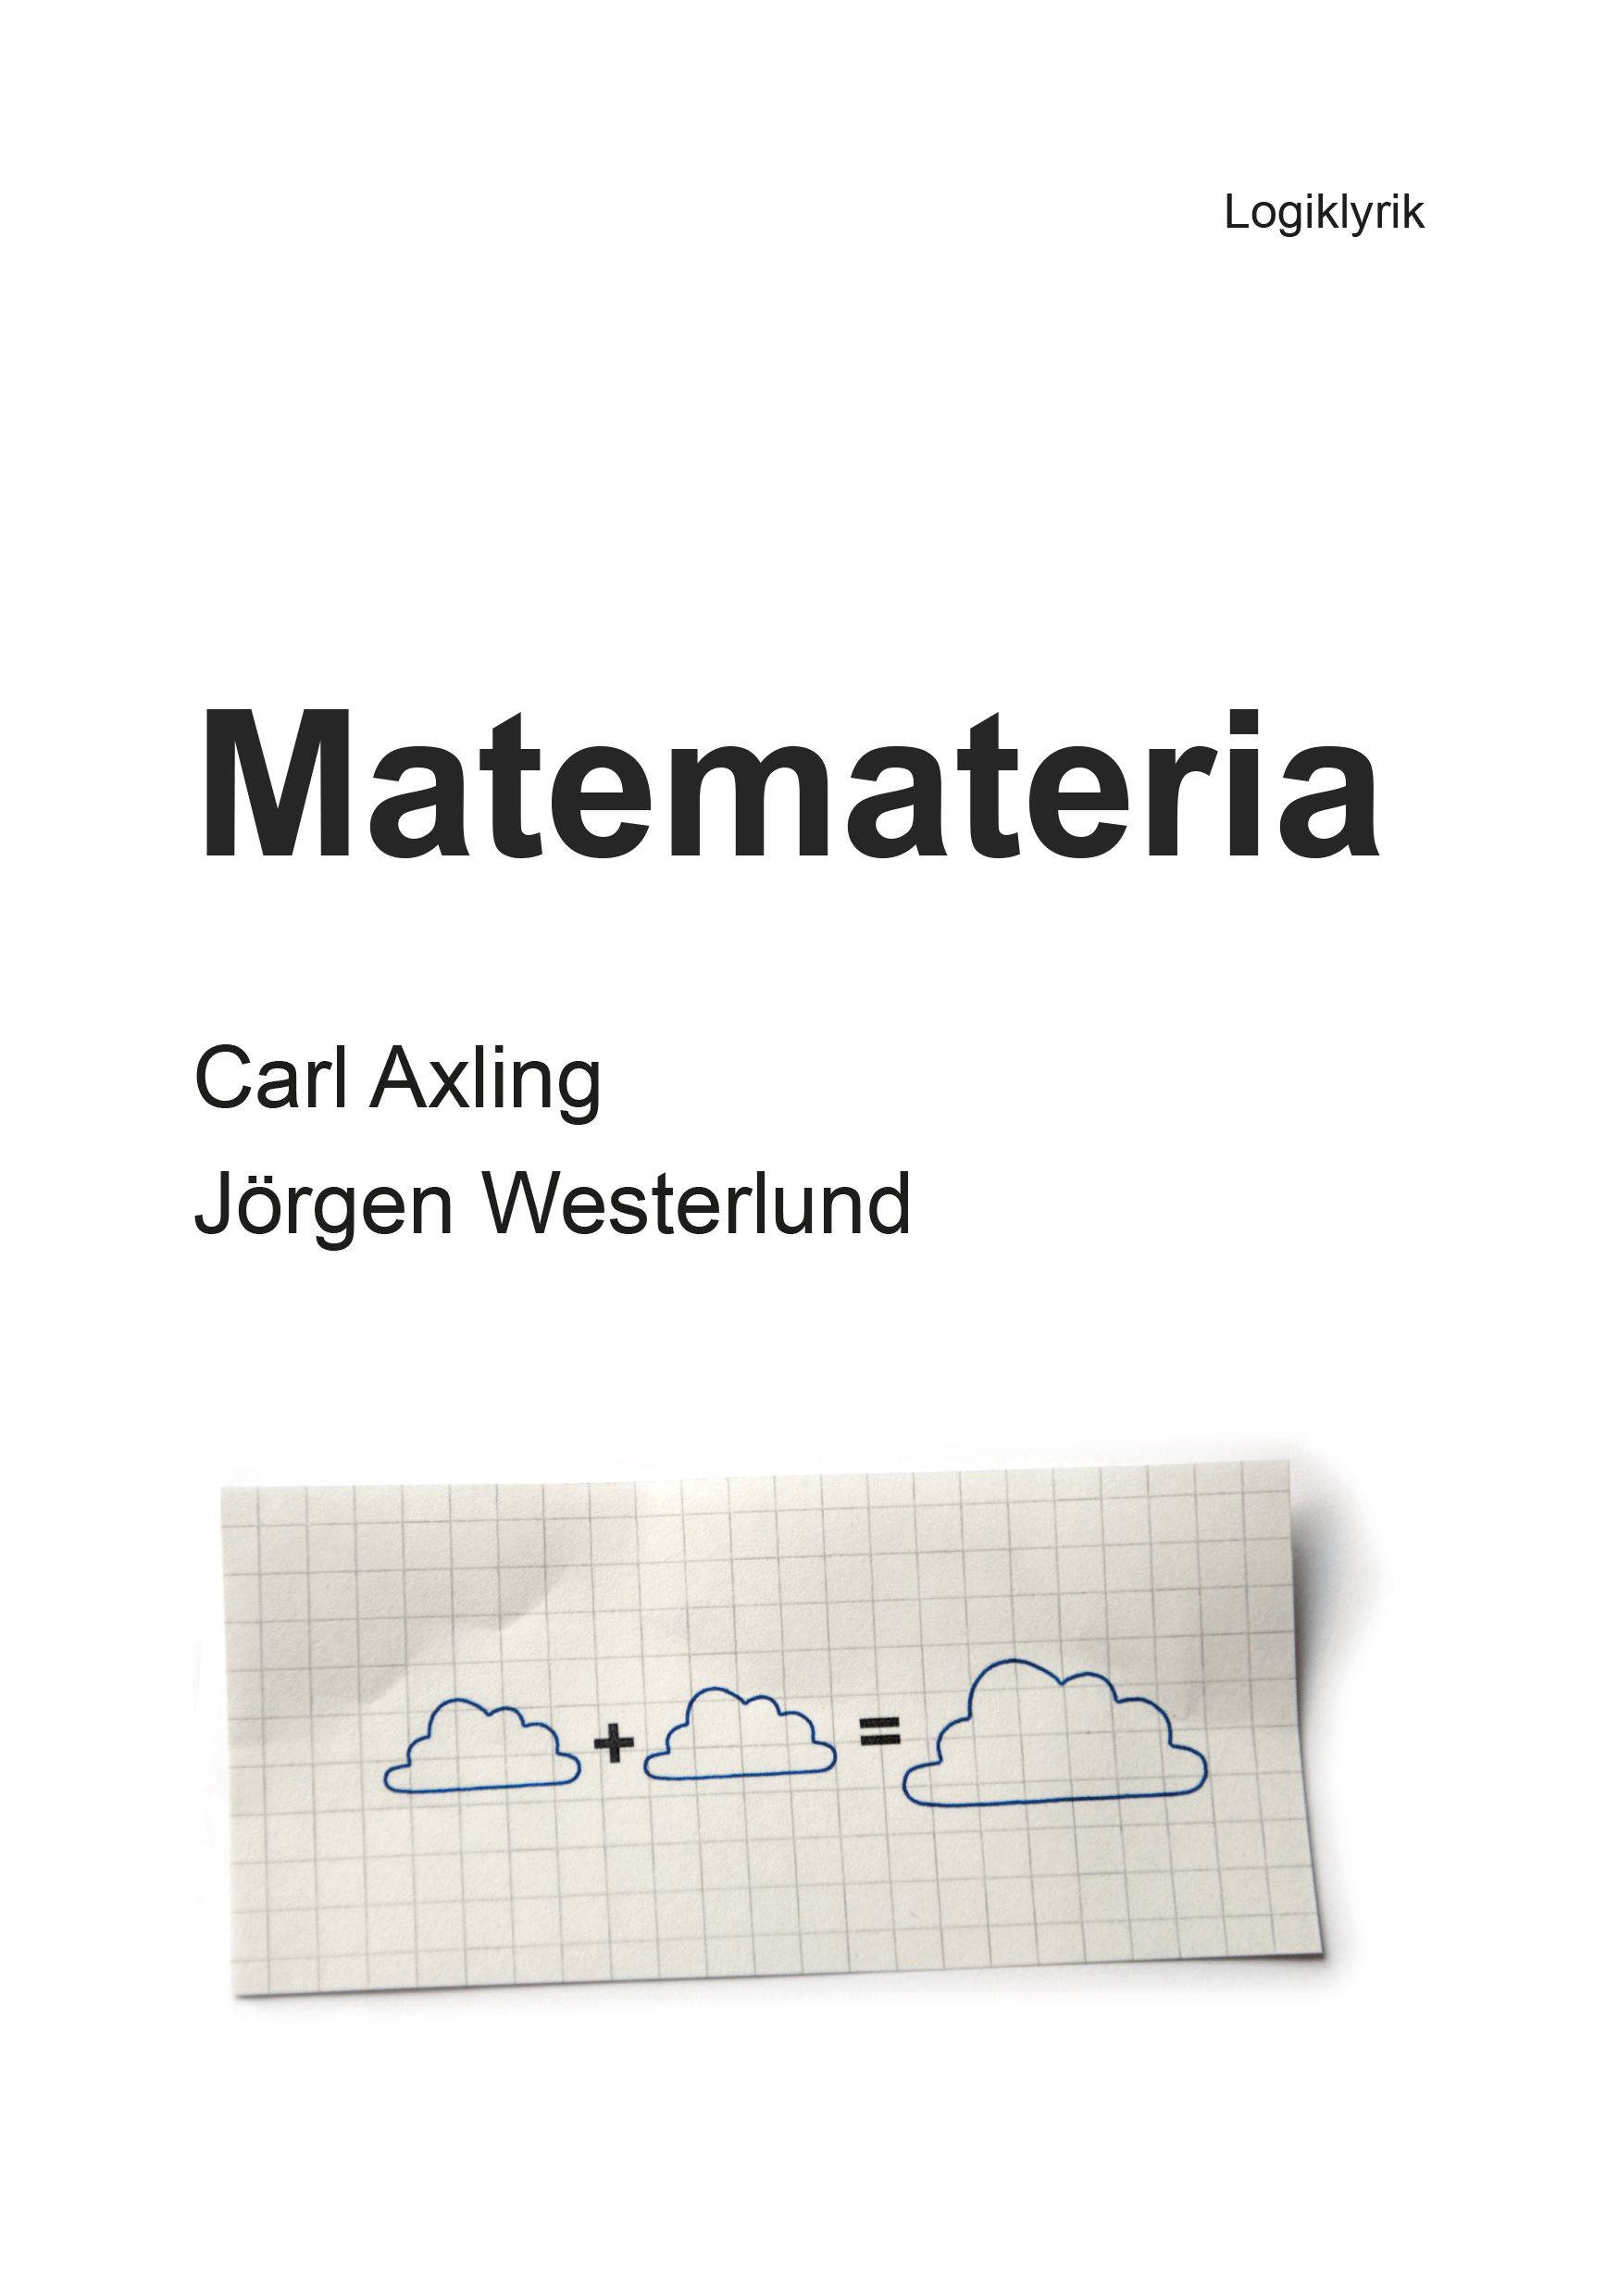 Matemateria, e-bog af Carl Axling, Jörgen Westerlund